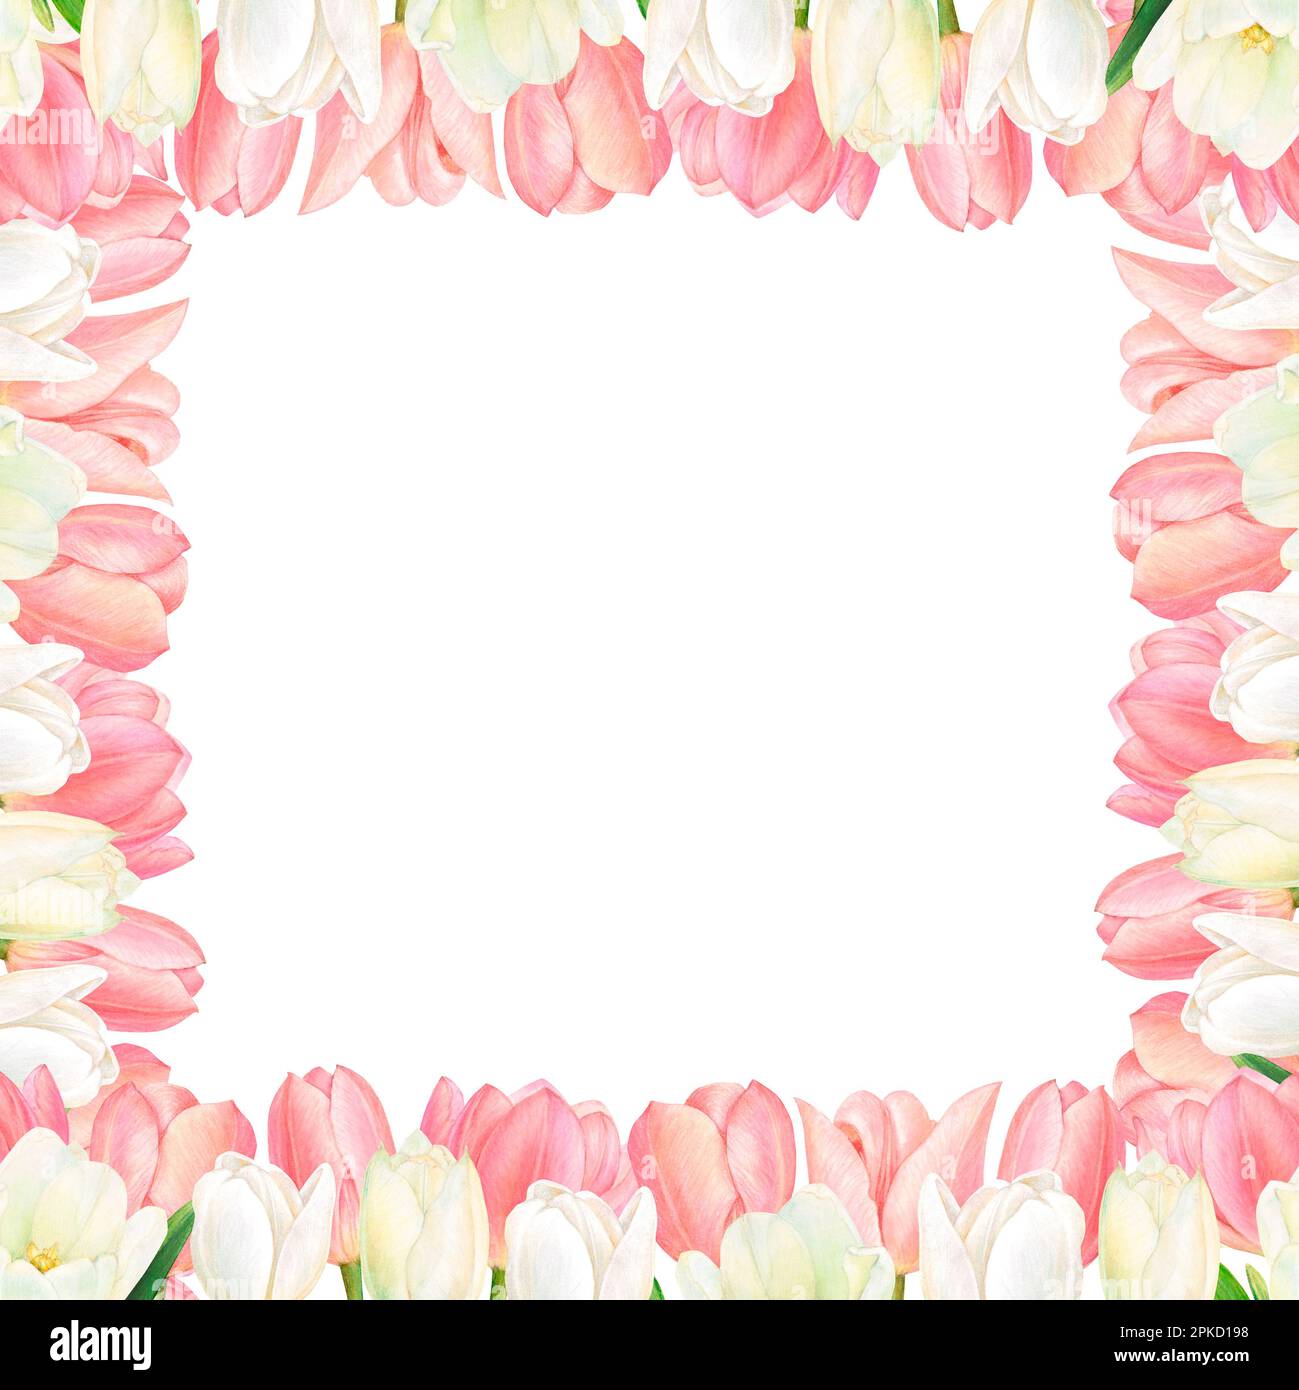 Carte postale carrée avec bordure de fleur de tulipes blanches et roses pour les cartes d'invitation et de voeux Banque D'Images